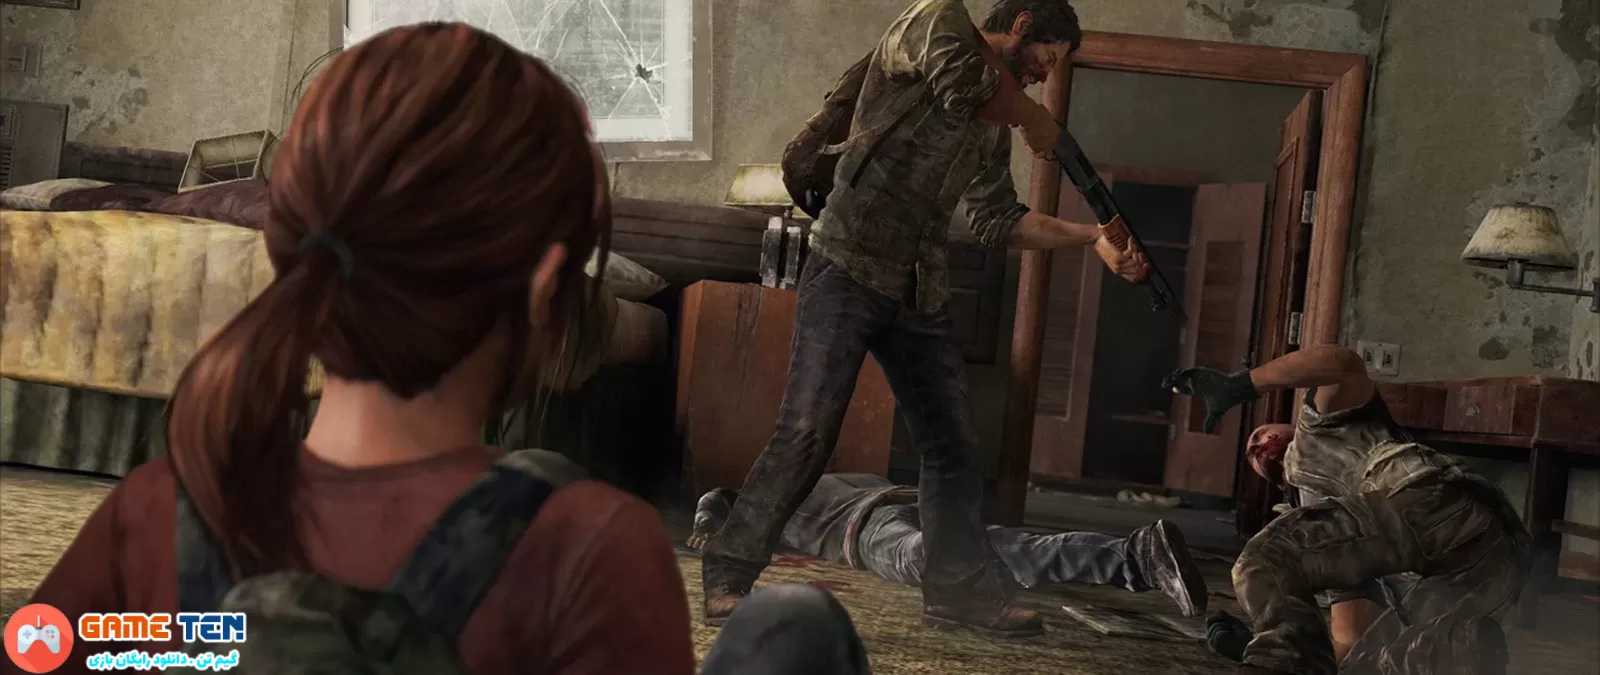 خرید ارزان بازی The Last of Us Part 1 برای PS5